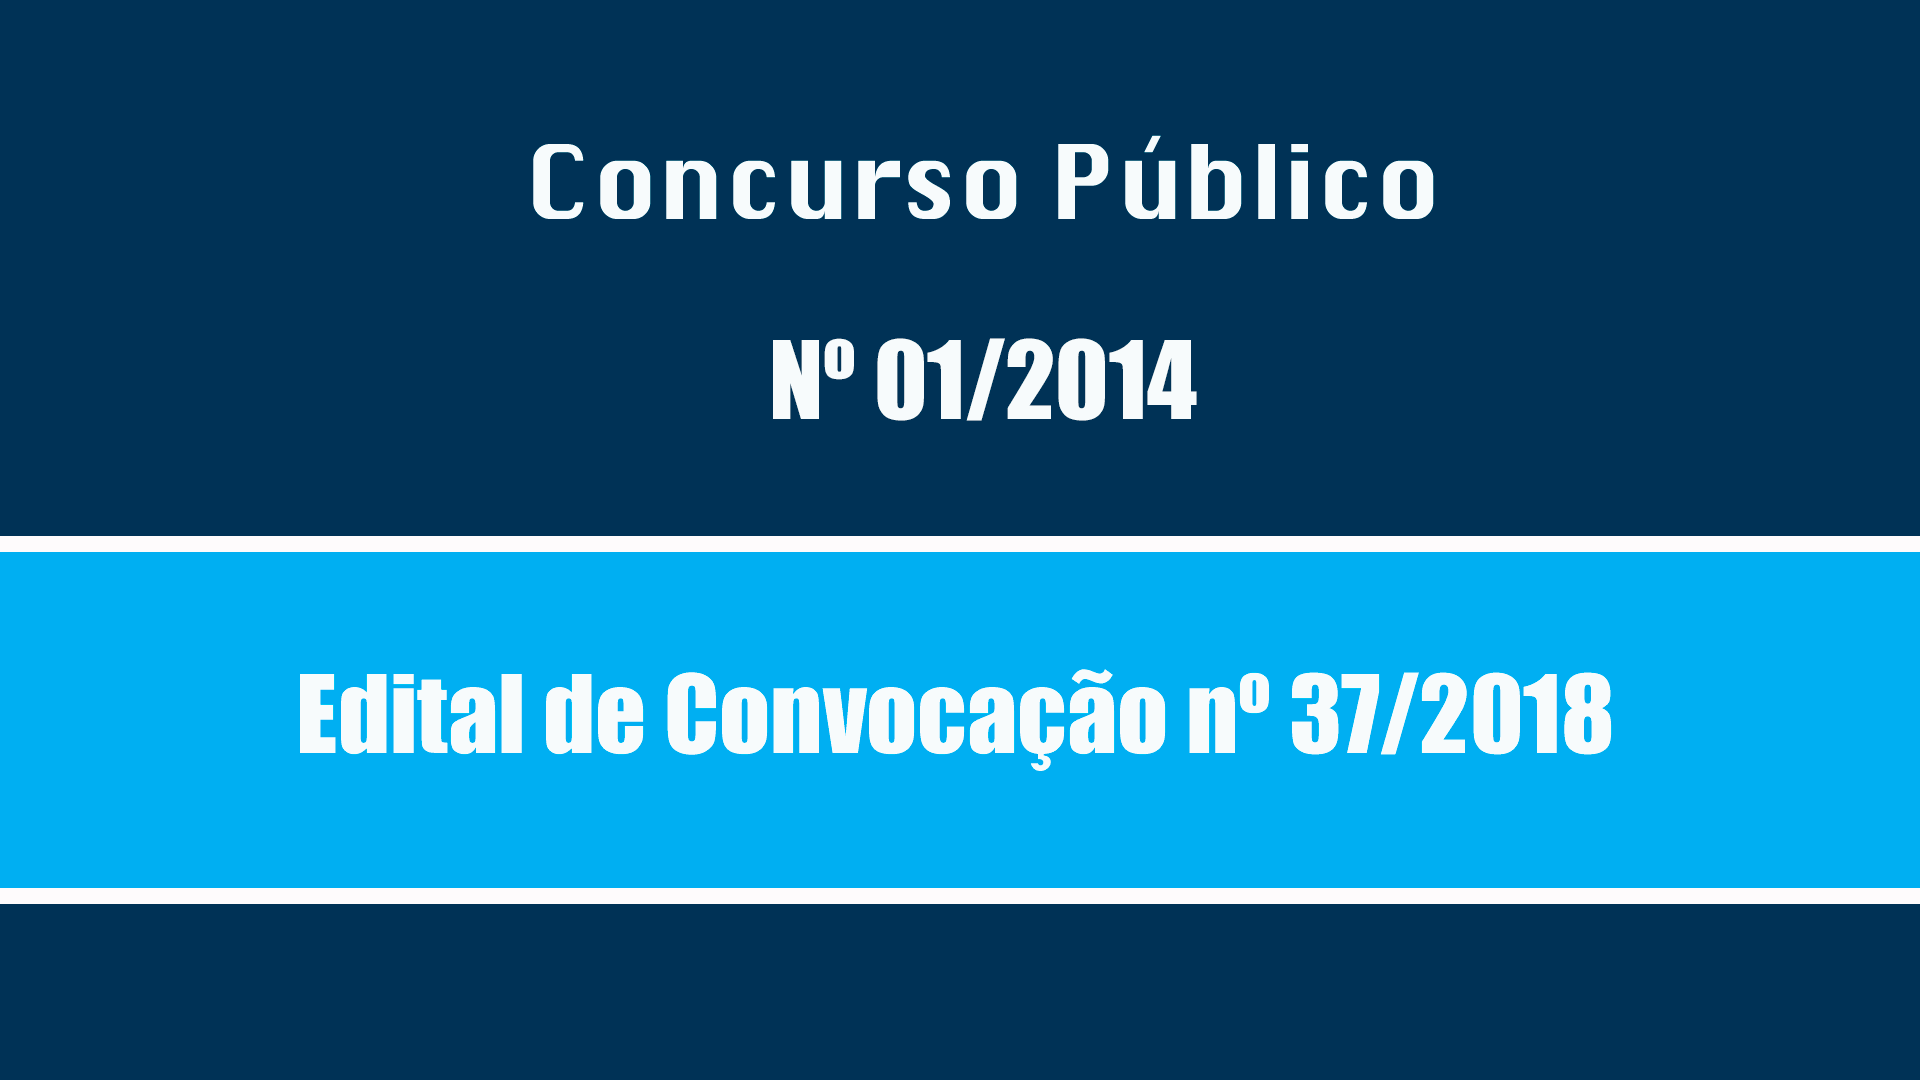 CONCURSO-PUBLICO - 001/2014 - EDITAL DE CONVOCAÇÃO Nº 37/2018